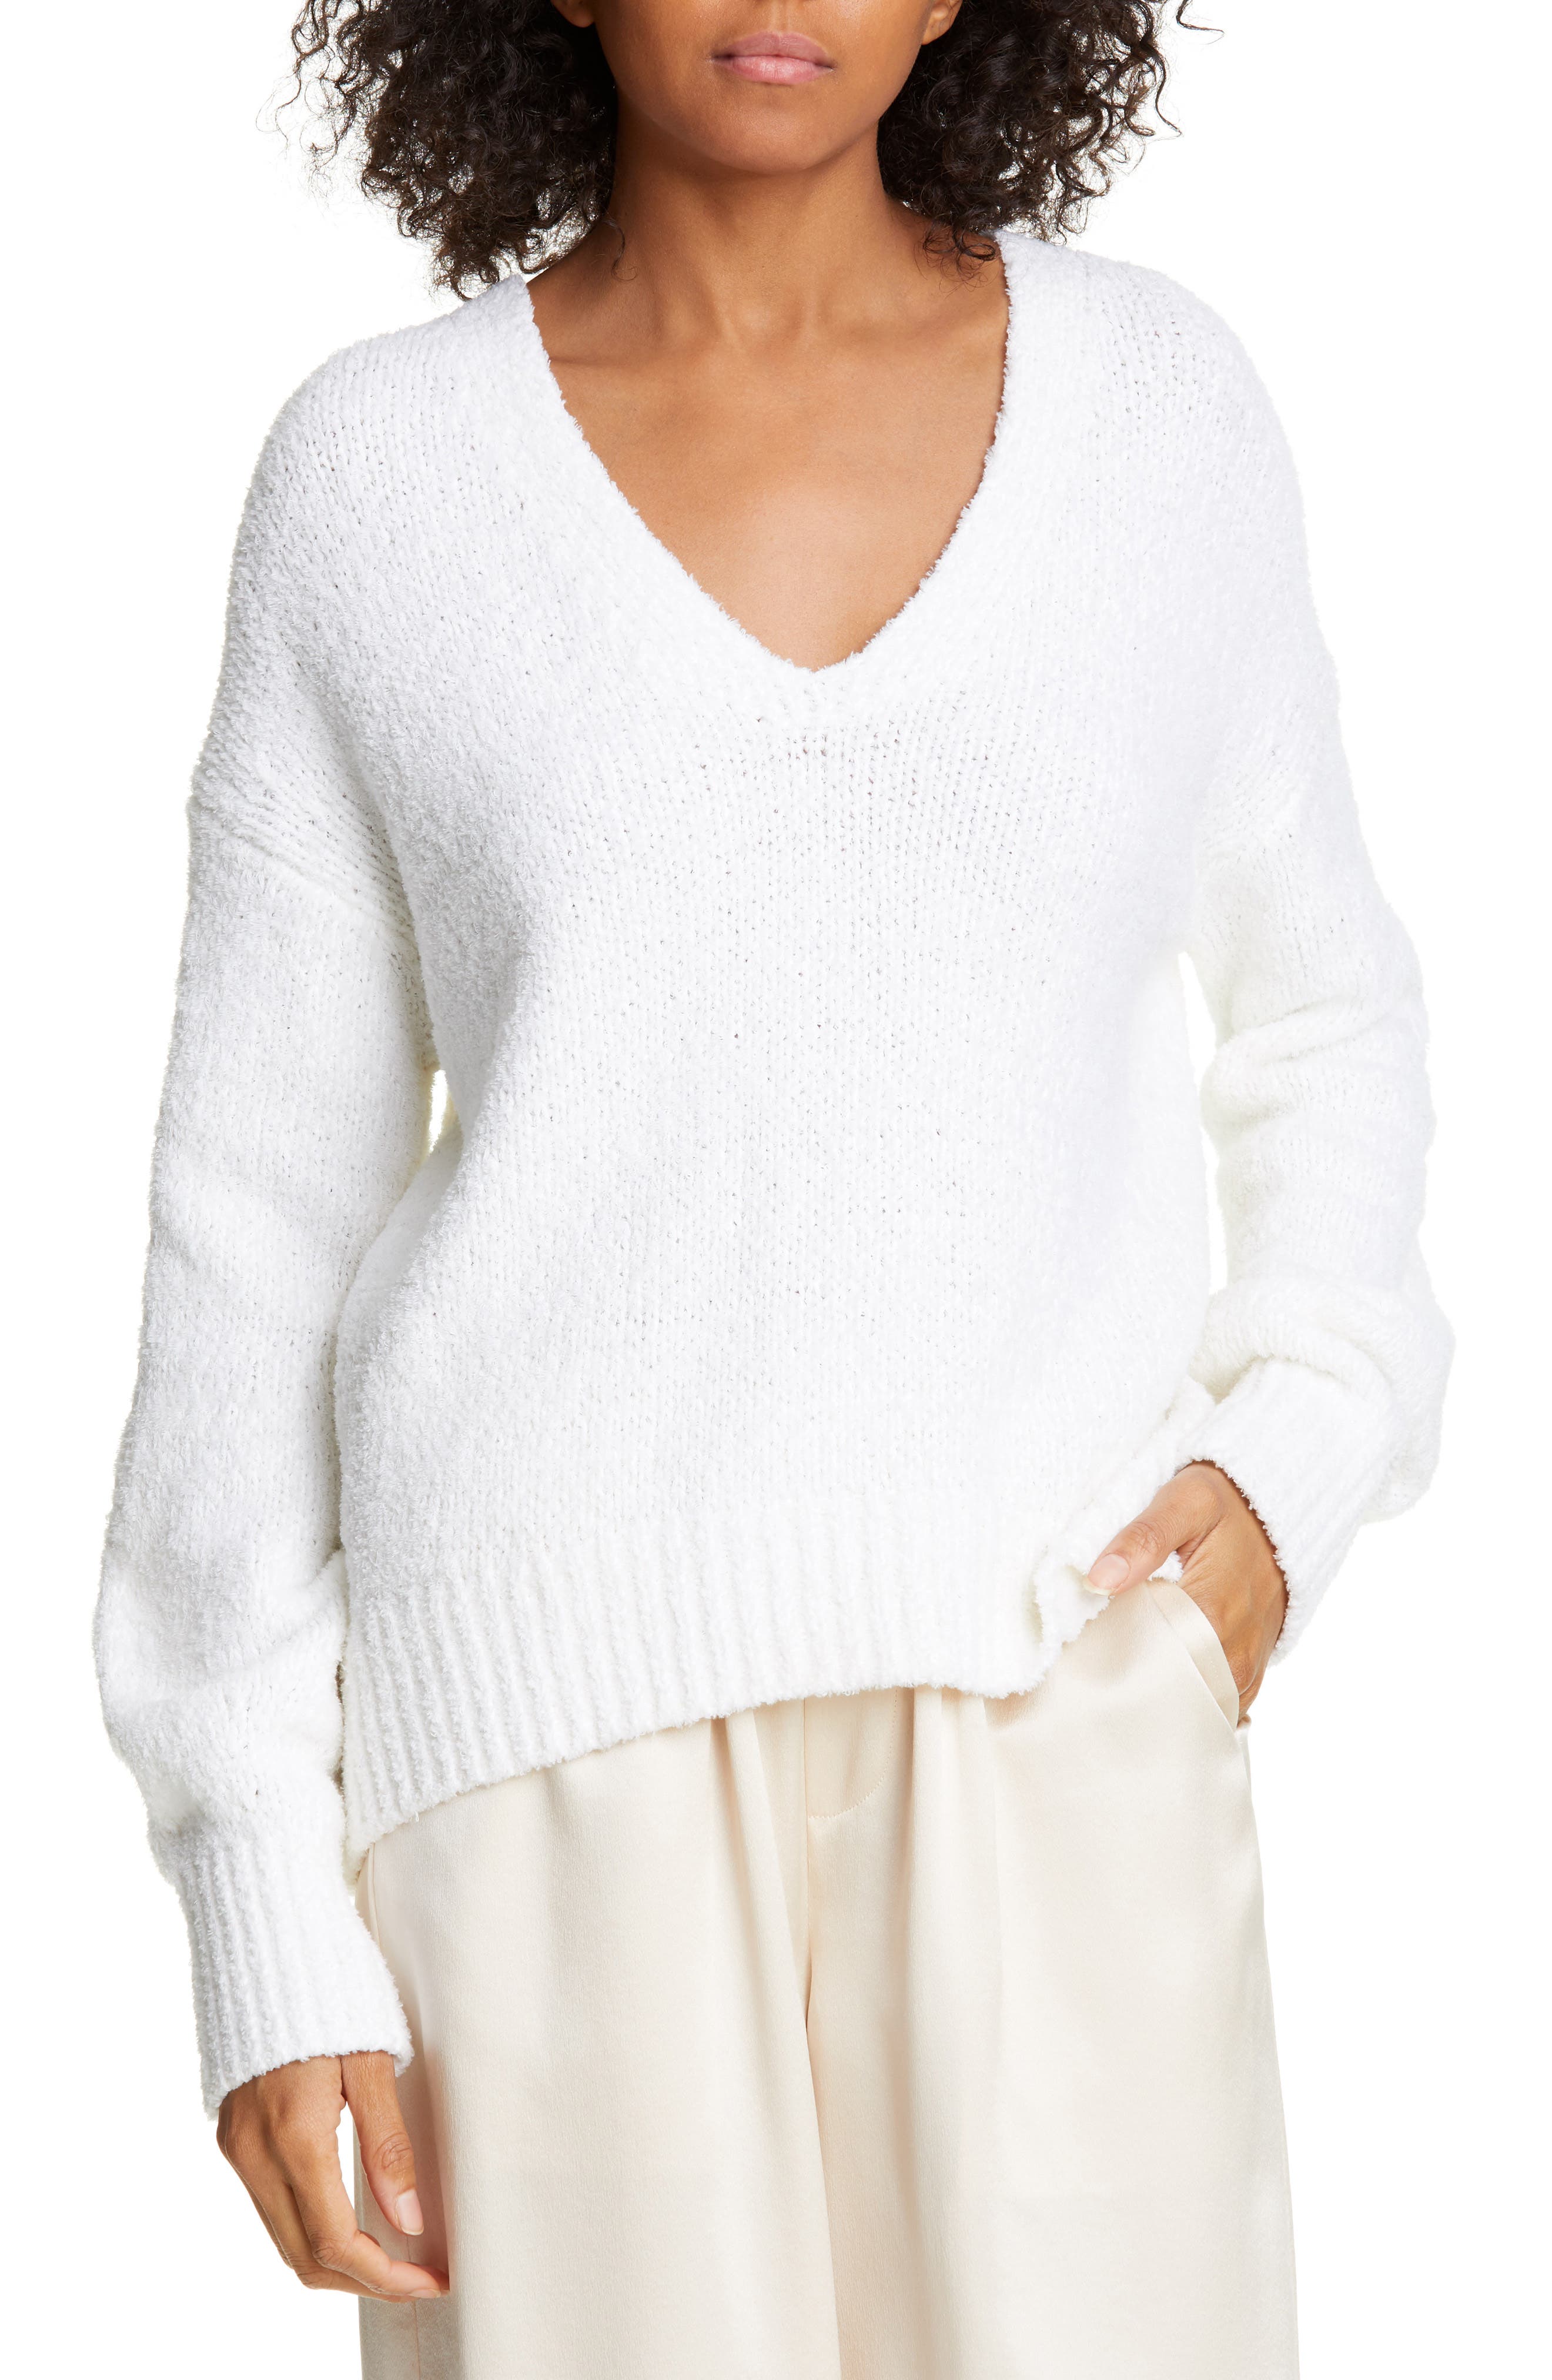 white v neck sweater women's